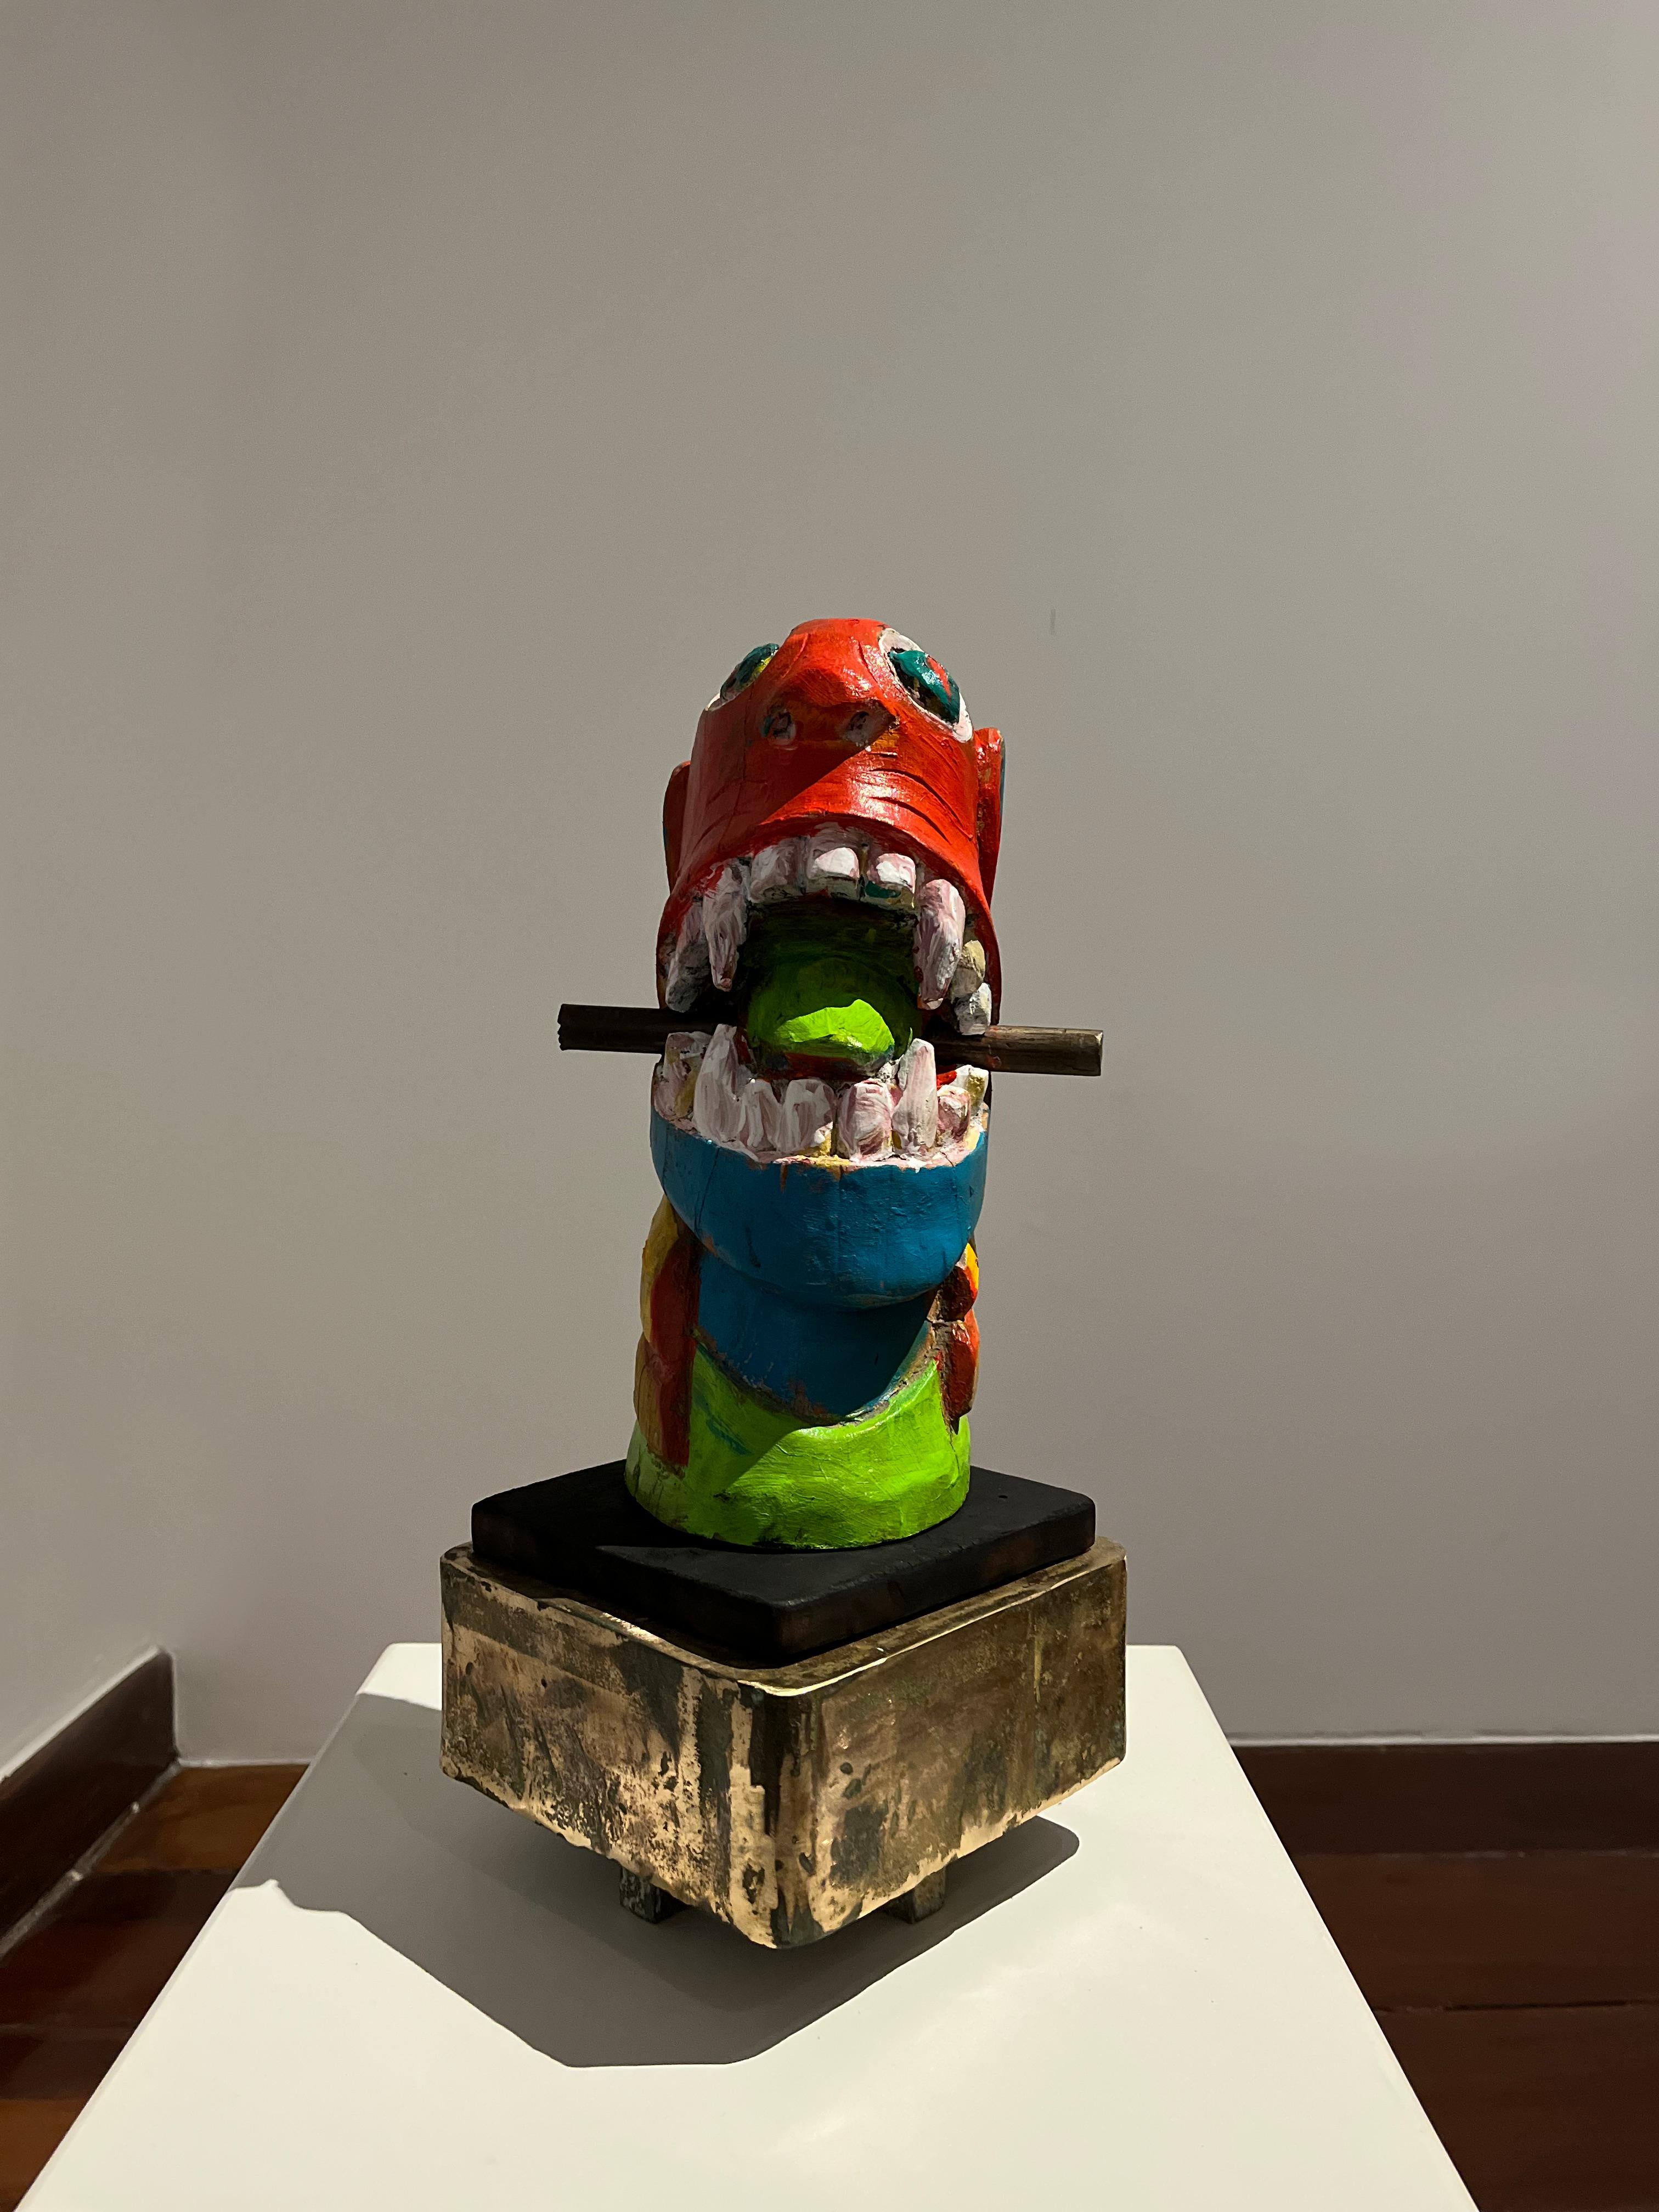 Apropriaçao frei de carranca, Figurative Sculpture. From the Series Sculptures For Sale 3